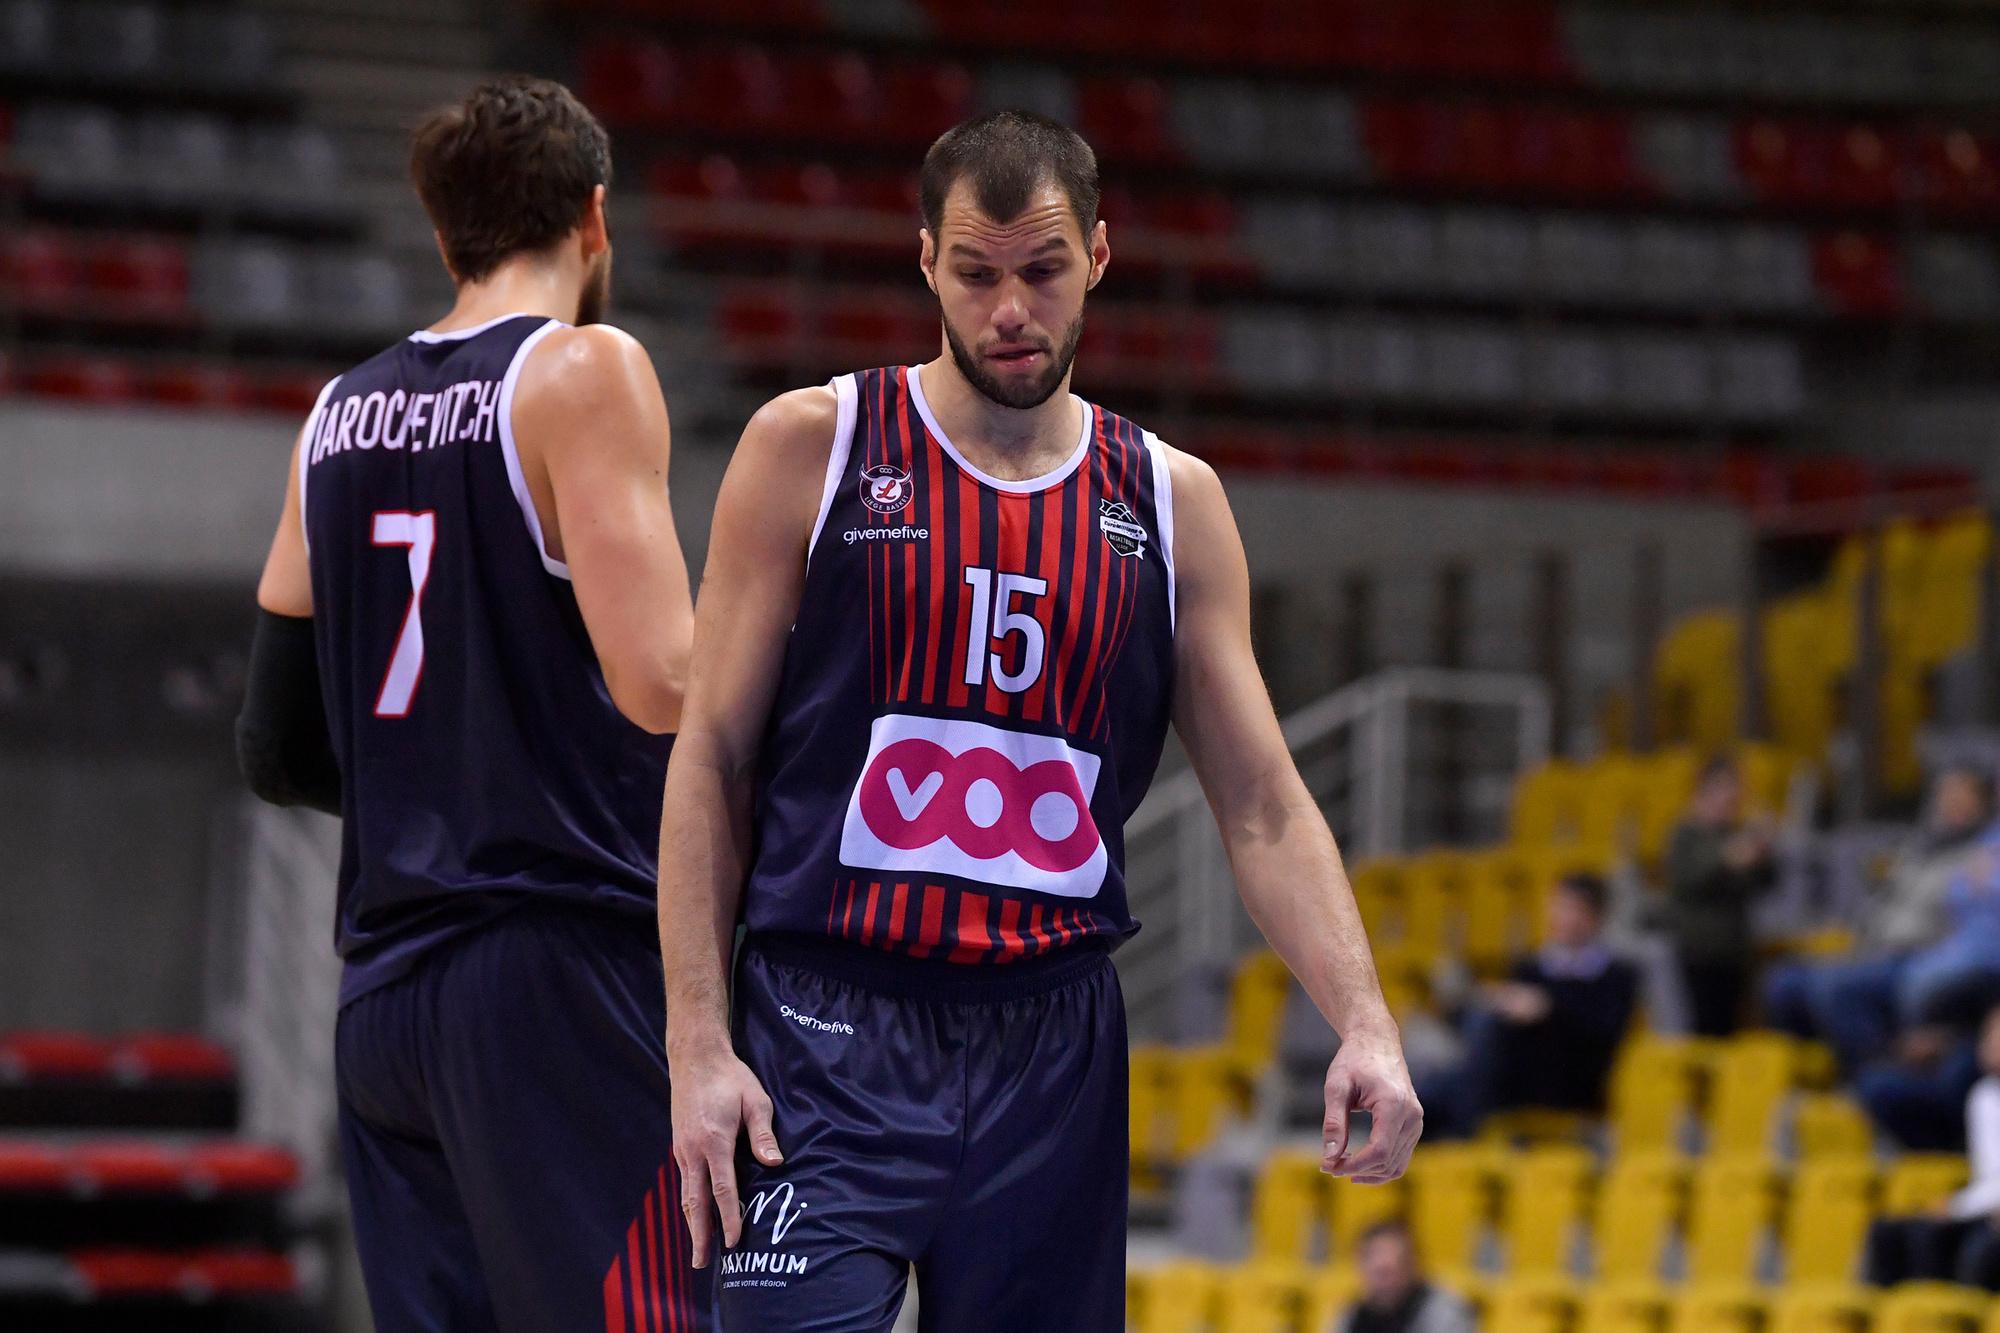 Basket Luik maakte donderdag door financiële problemen niet in actie te komen tot januari.